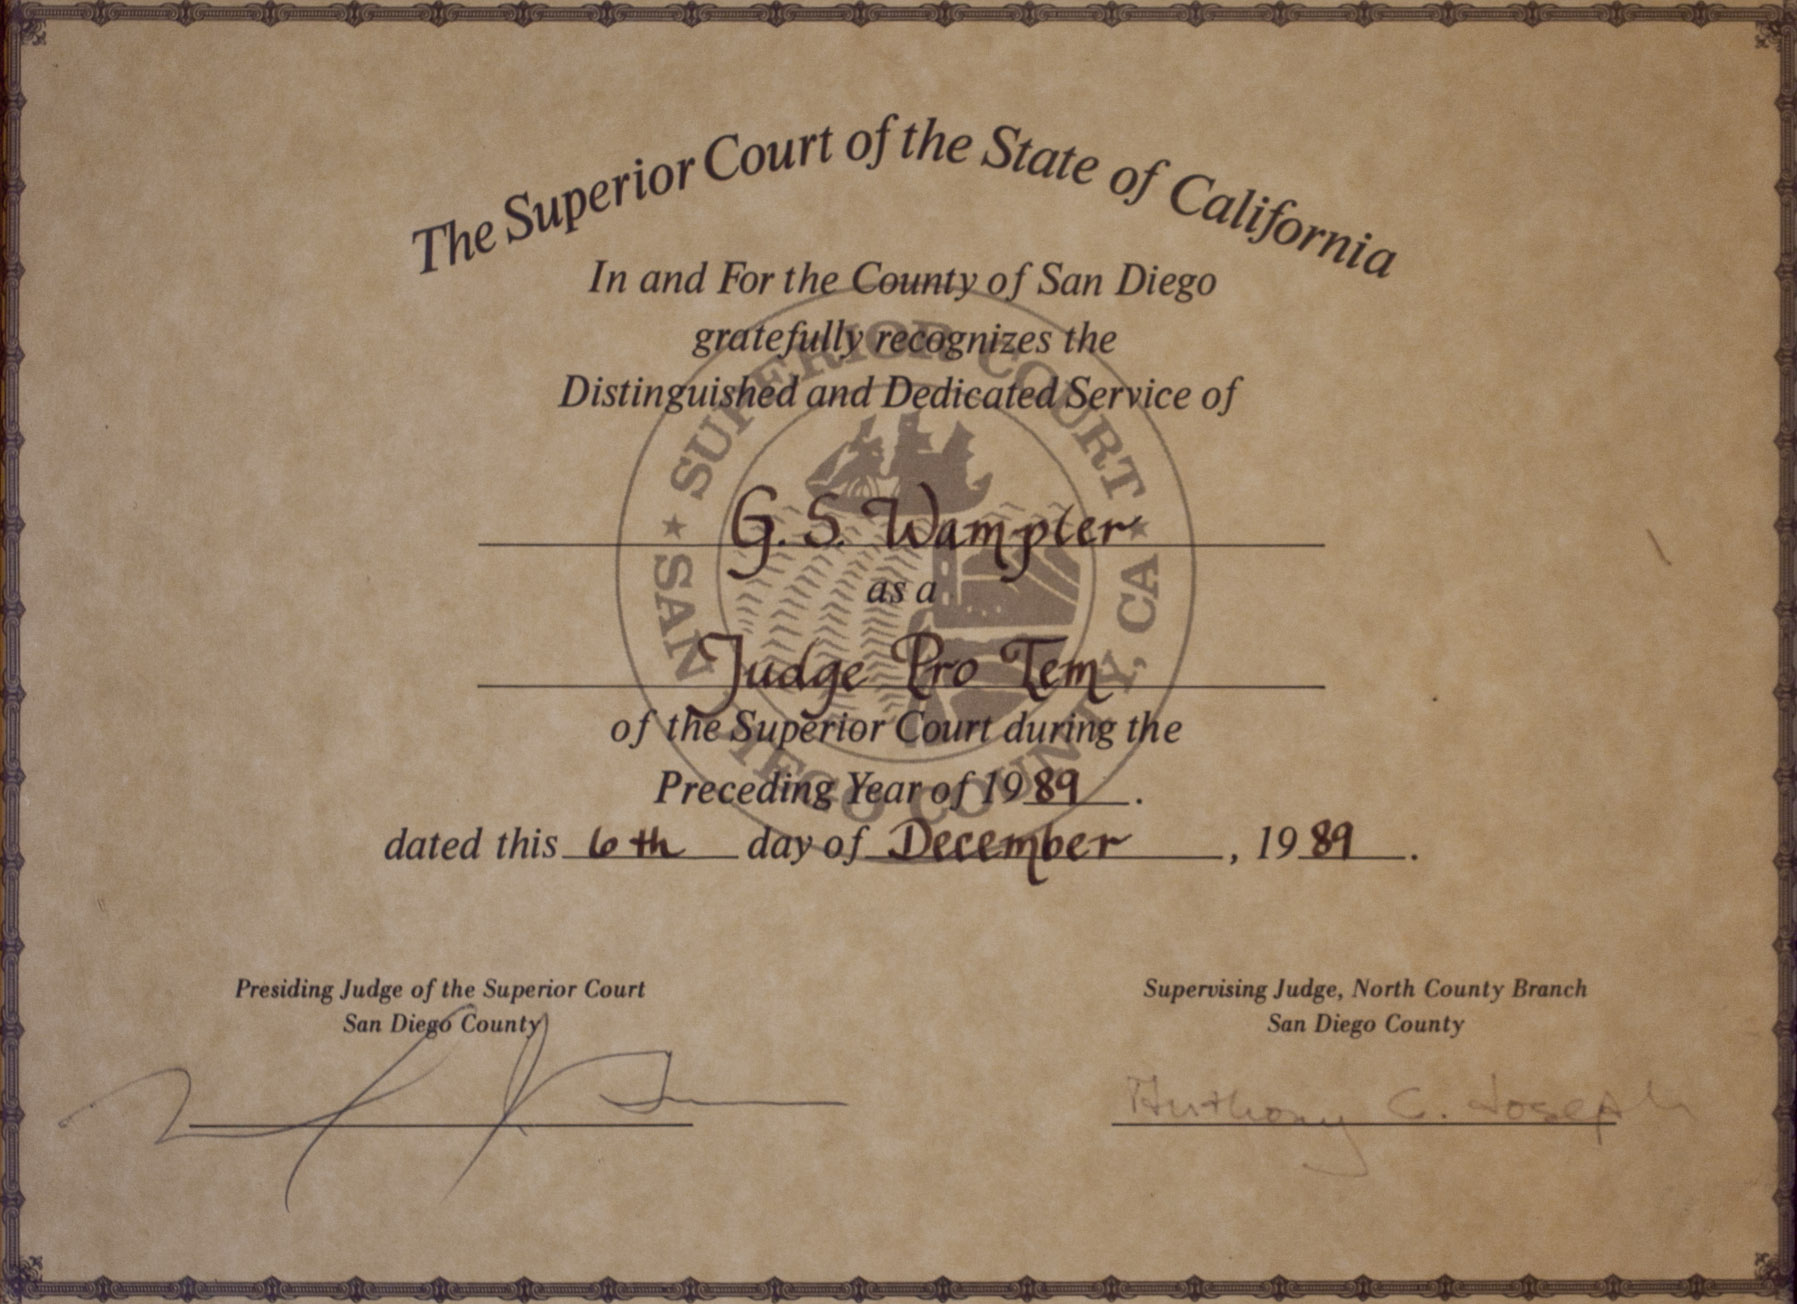 San Diego Superior Court 1989 Judge Pro Tem